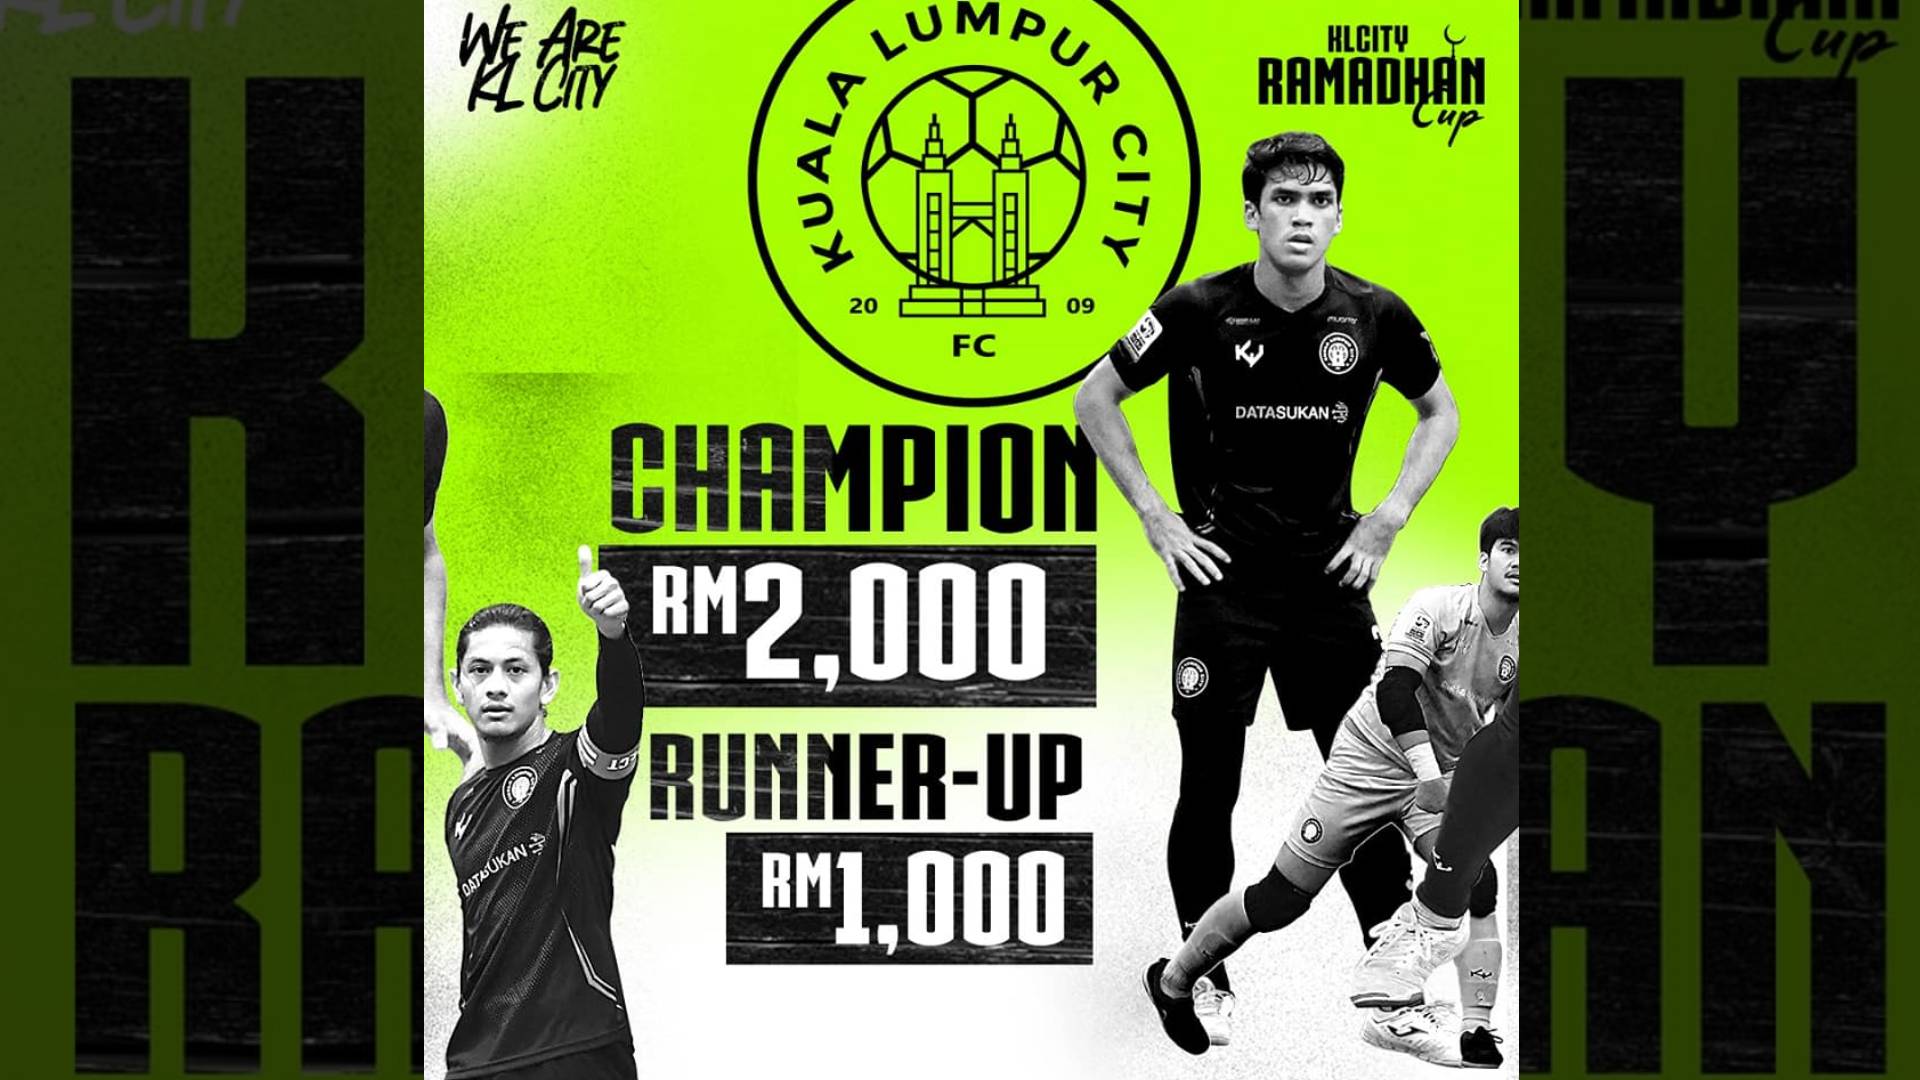 kl city ramadan cup 2022 KL City Lancarkan ‘Ramadan Cup’, Hadiah Keseluruhan RM 3000 Untuk Dimenangi